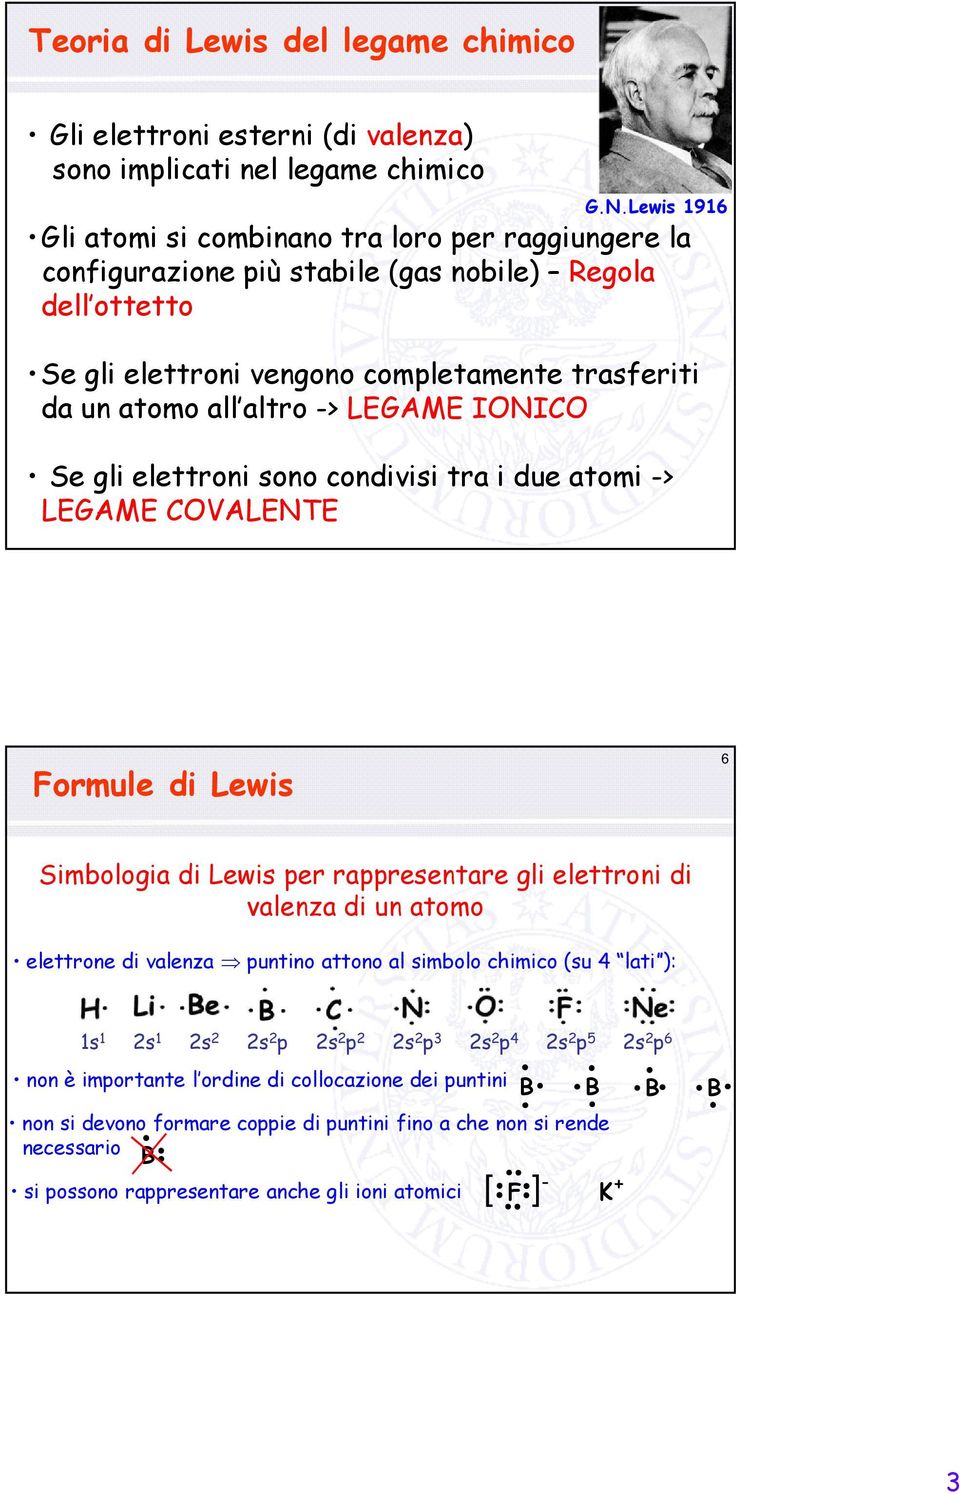 LEGAME INIC Se gli elettroni sono condivisi tra i due atomi -> LEGAME CVALENTE Formule di Lewis 6 Simbologia di Lewis per rappresentare gli elettroni di valenza di un atomo elettrone di valenza